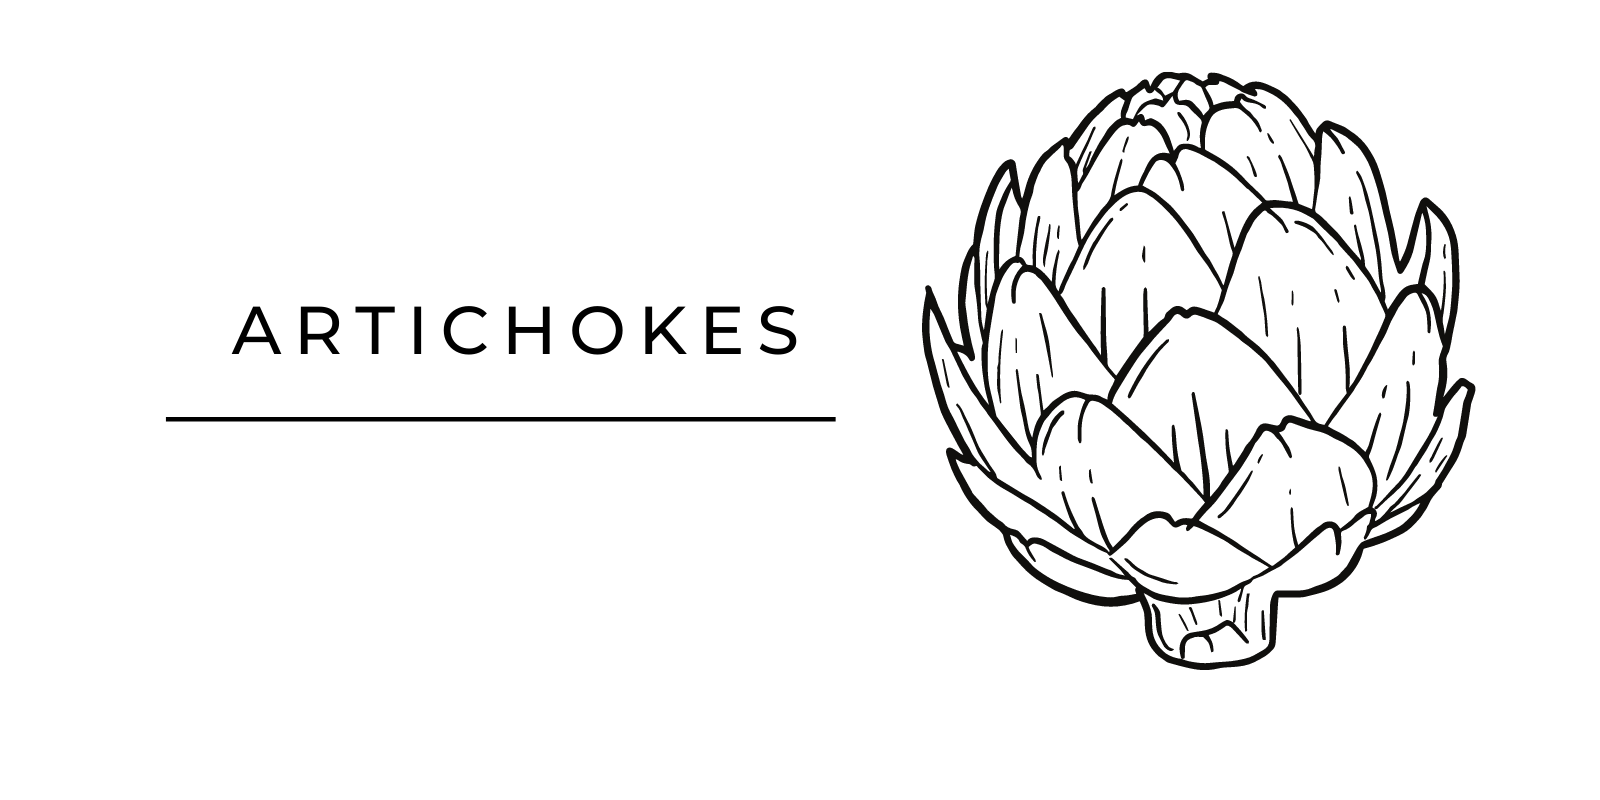 Seasonal Produce Artichokes